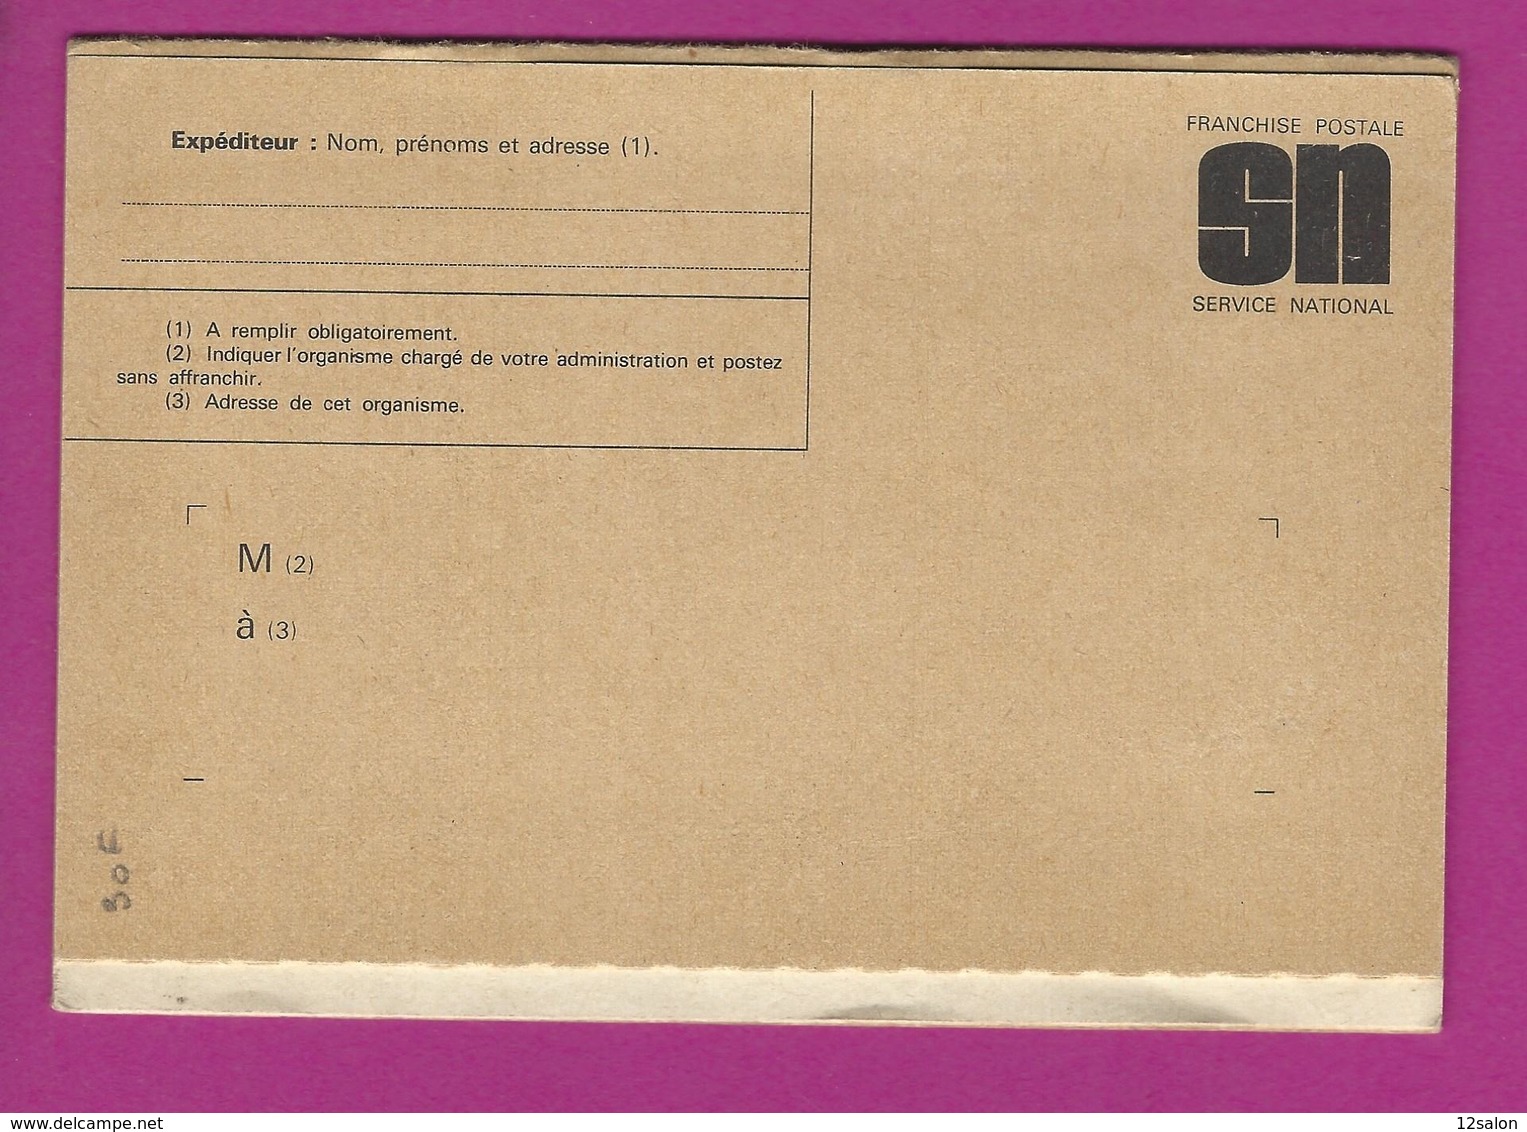 MEMENTO DU RESERVISTE 1974 - Documents